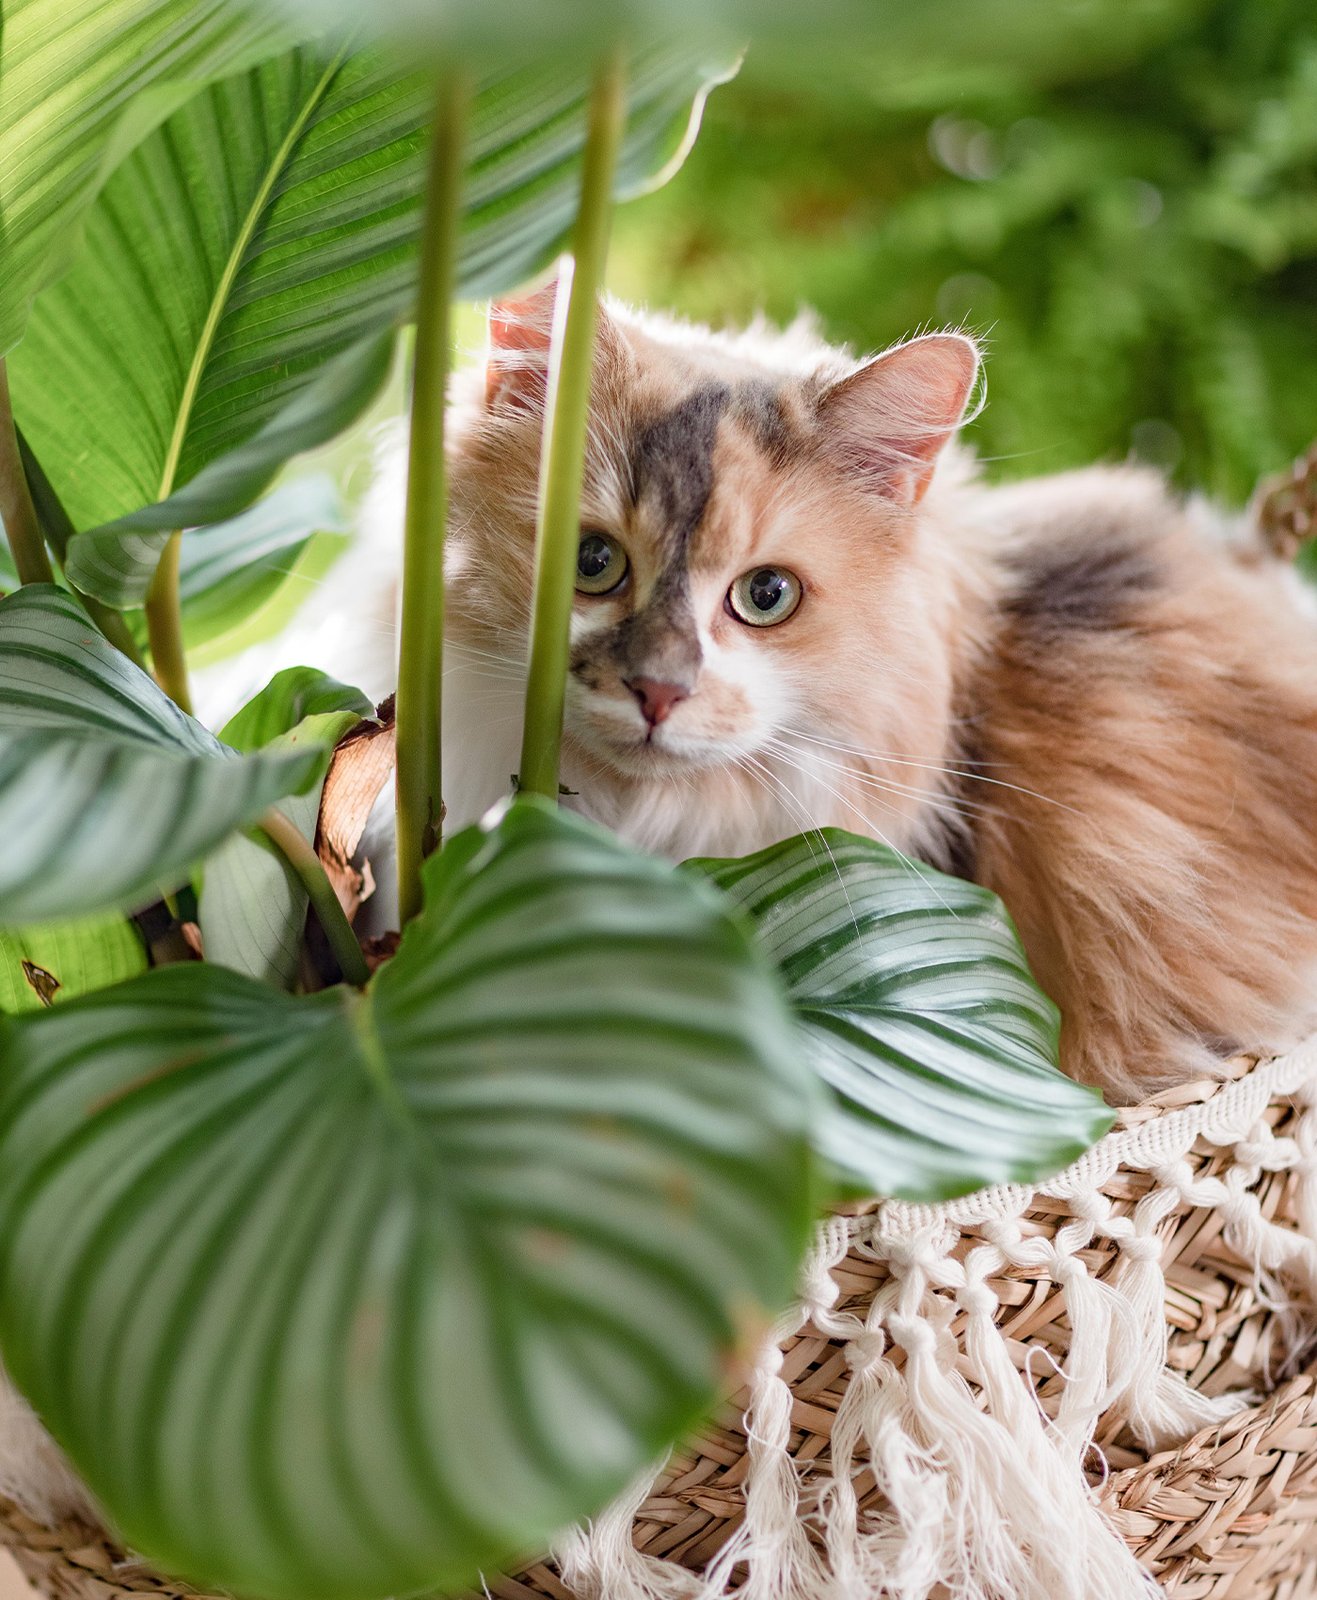 Un chat dans une panière devant un calathea